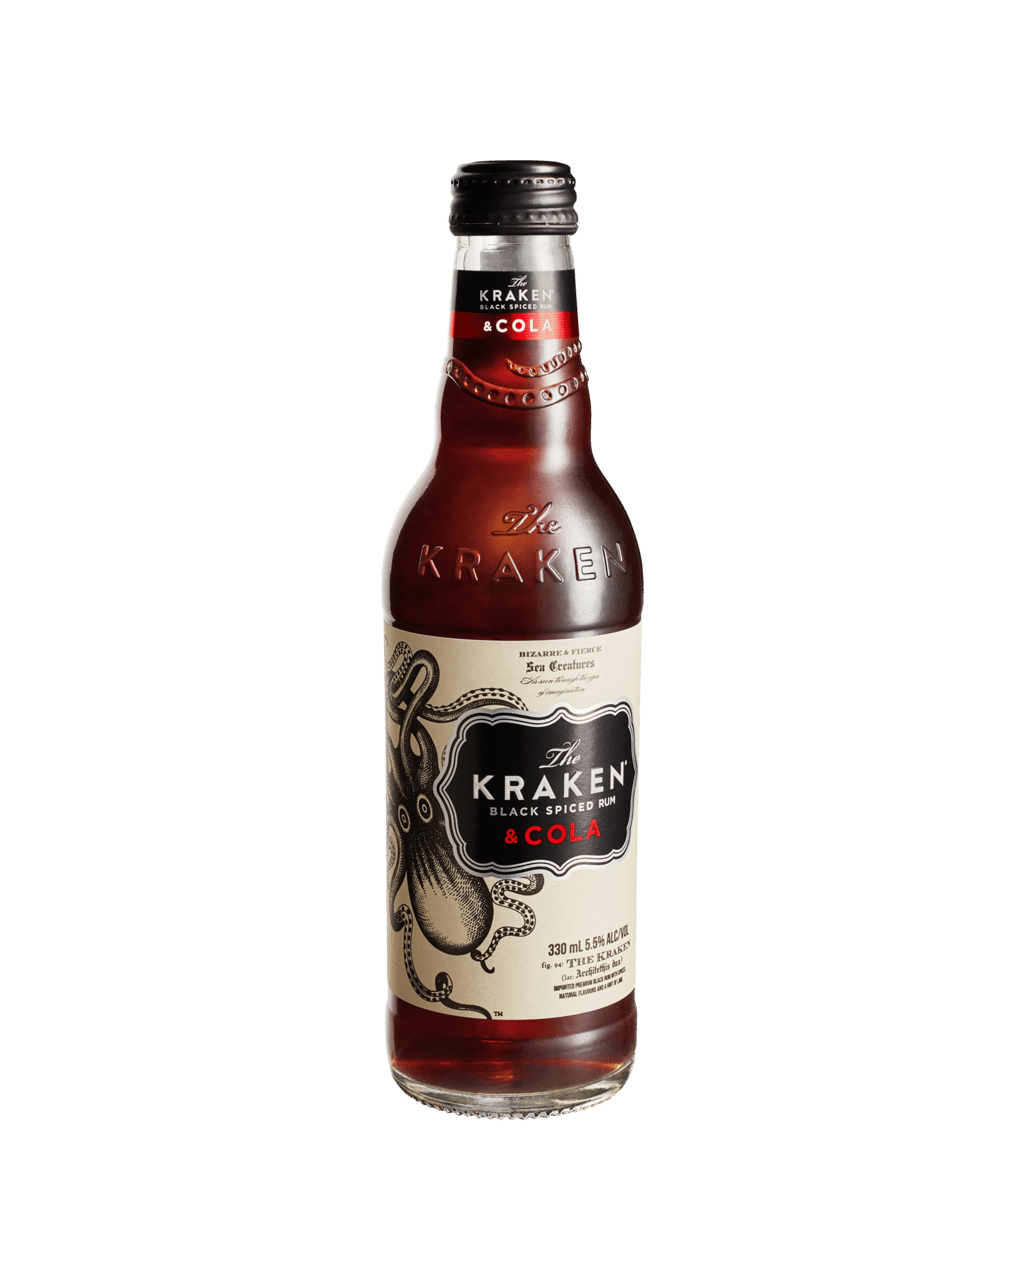 The Kraken Black Spiced Rum & Cola Bottles 330ml (Unbeatable